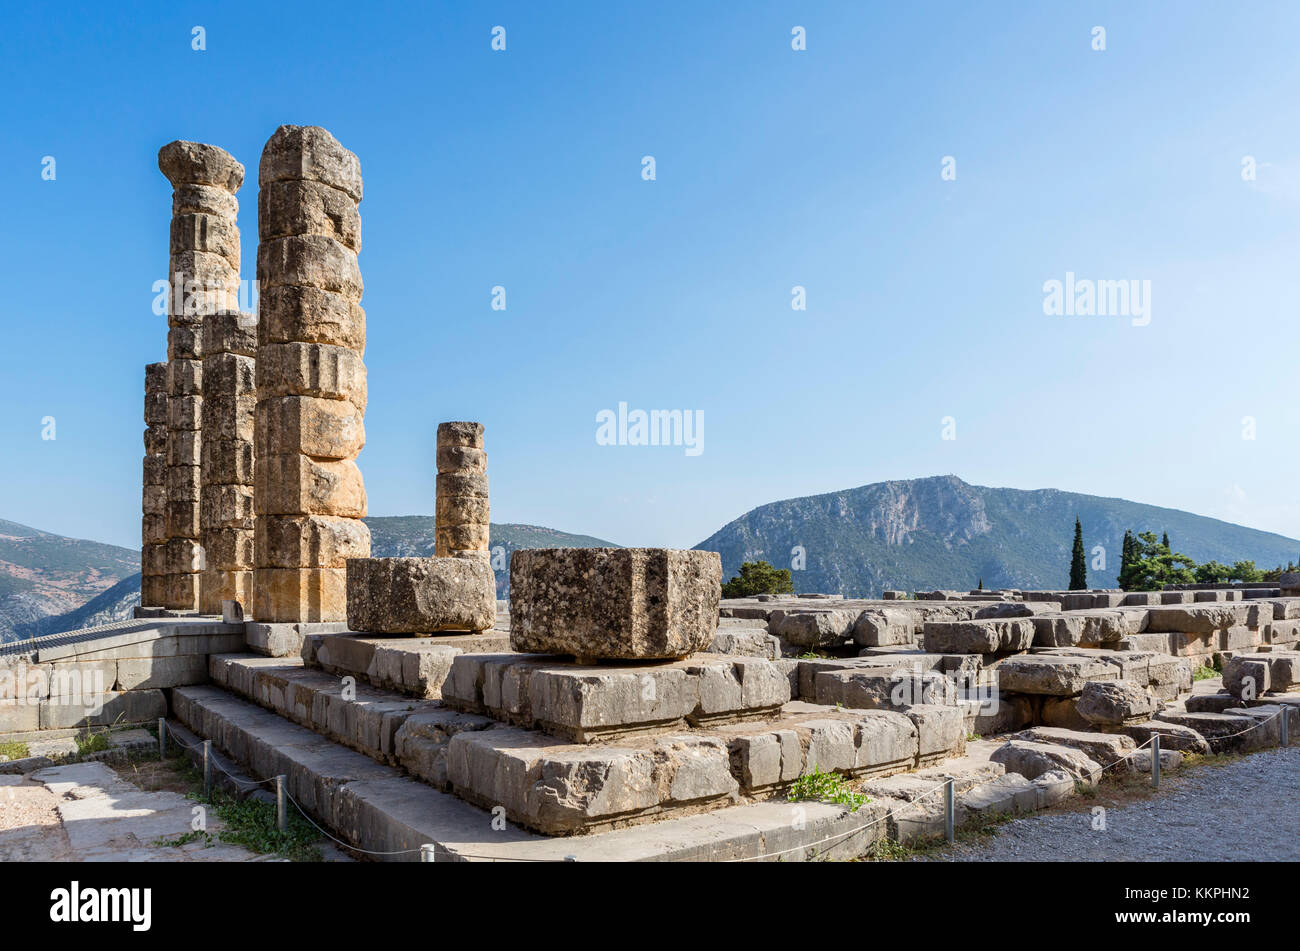 Temple of Apollo, Delphi, Greece Stock Photo